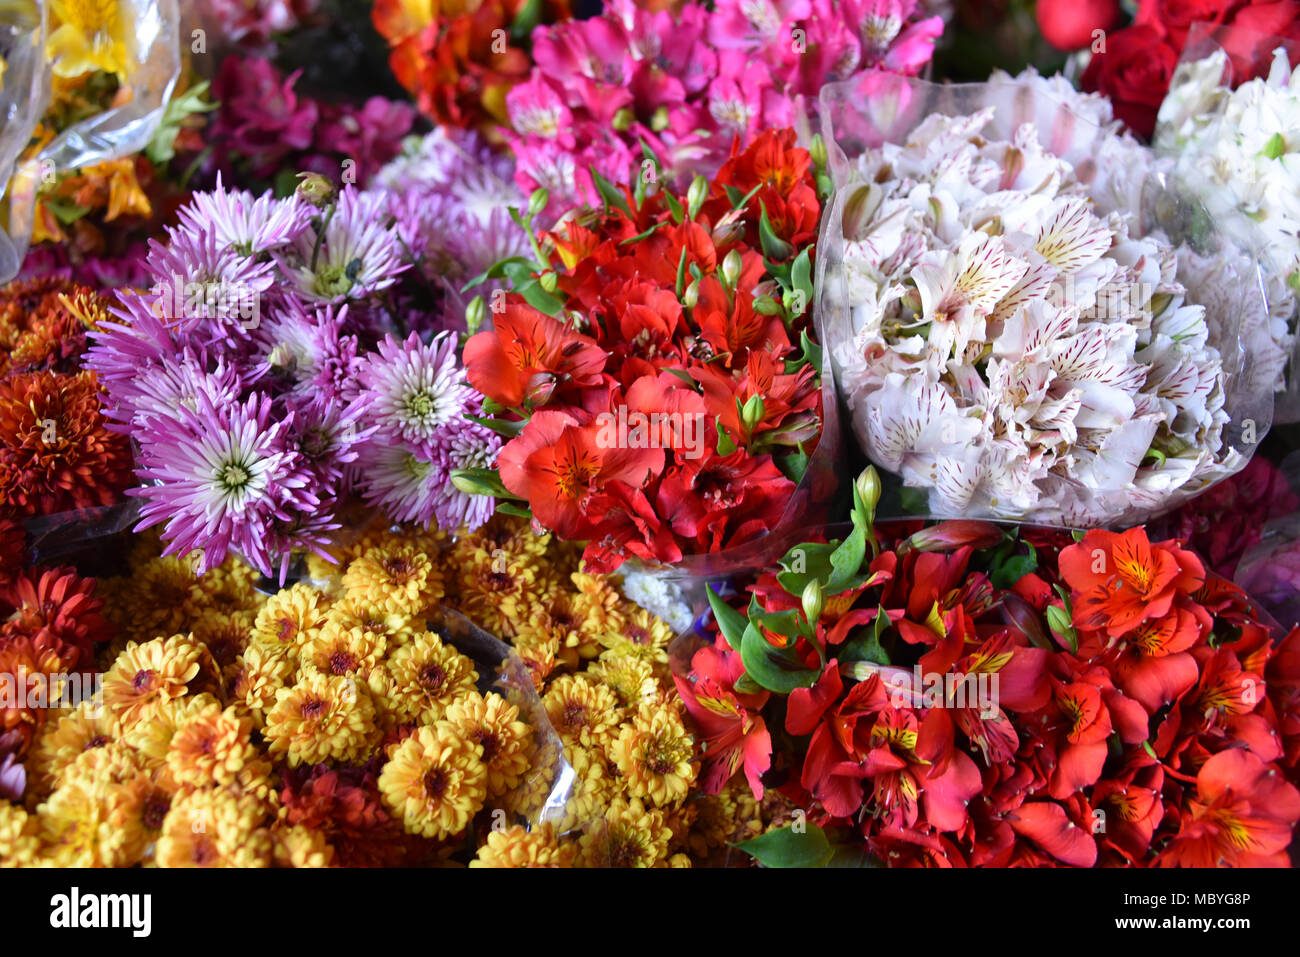 CUZCO, Perù - Marzo 29, 2018: fiori colorati in vendita su uno stallo in Mercado San Pedro market Foto Stock